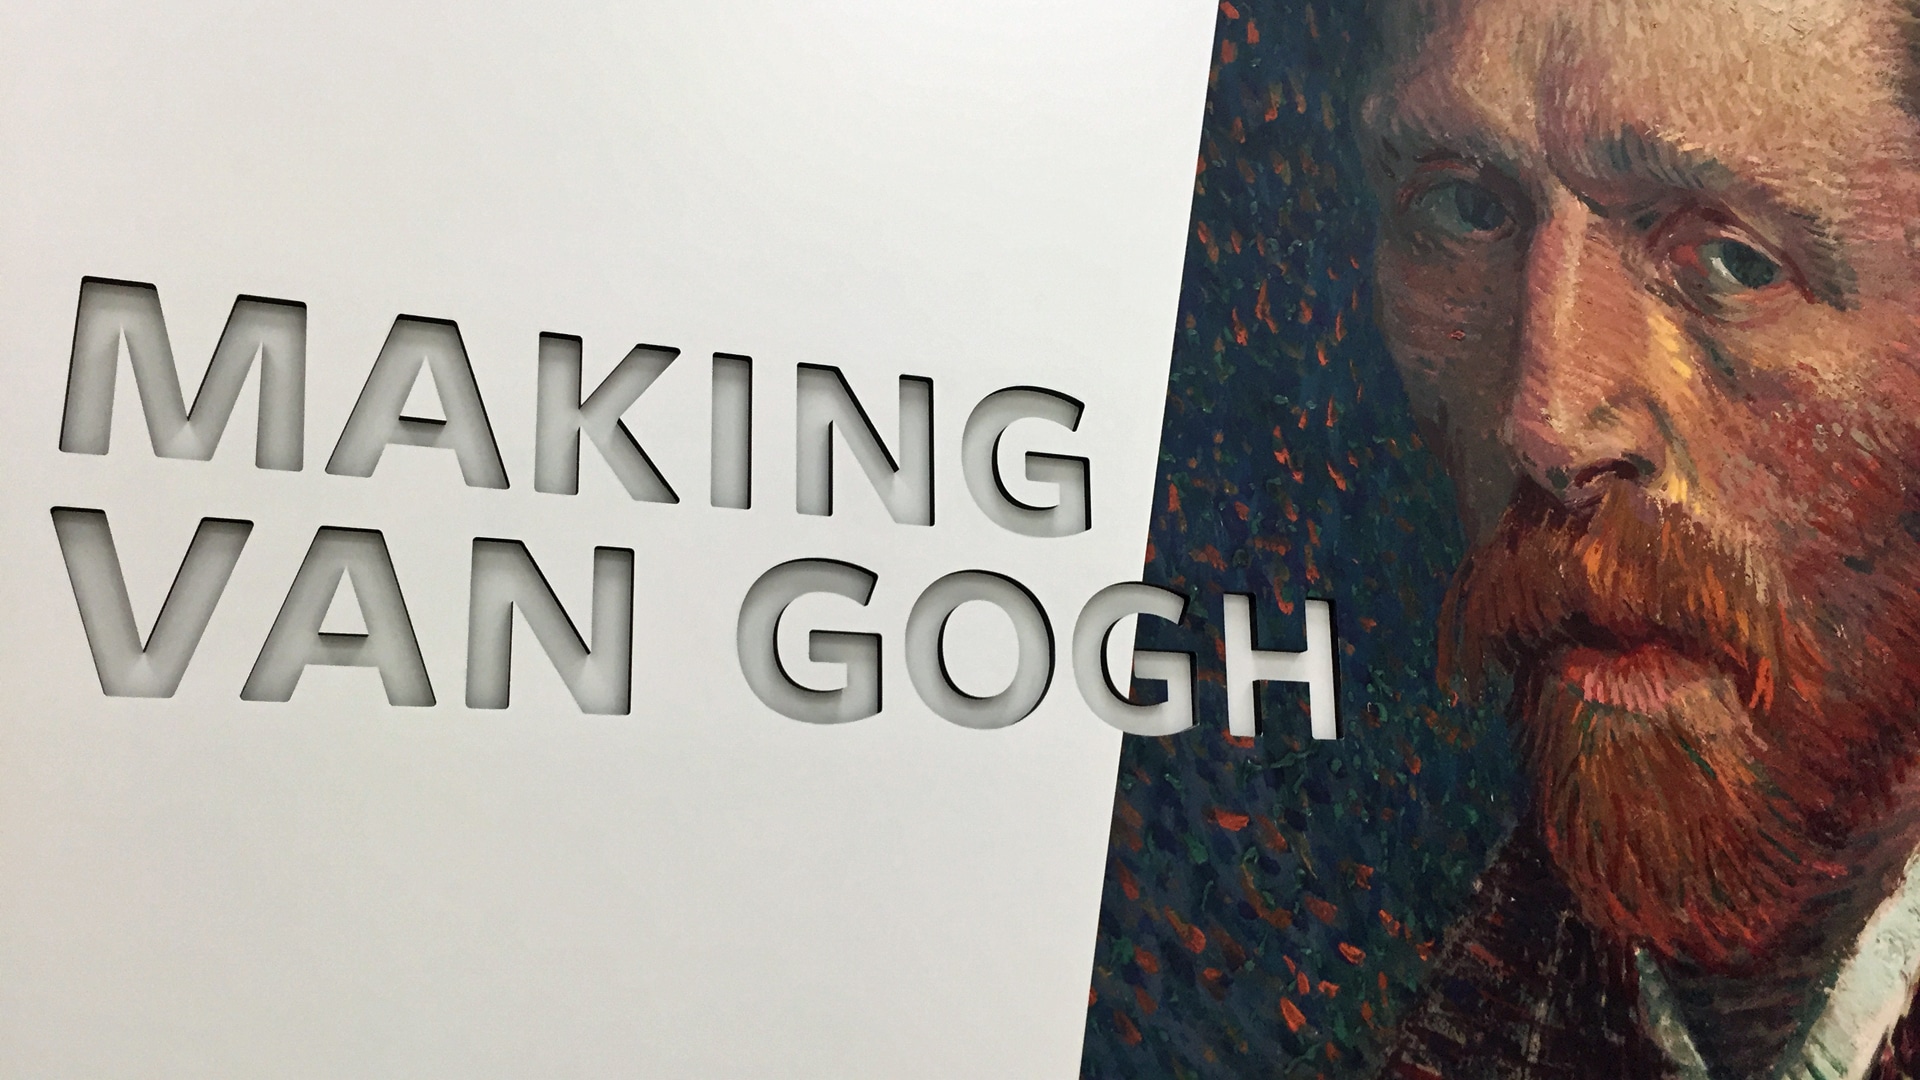 Im Zentrum der Ausstellung steht die Entstehung des „Mythos van Gogh“ um 1900 sowie die Bedeutung des Malers für die Moderne in Deutschland. Den Kern der Ausstellung bilden 50 Werke von Vincent van Gogh.